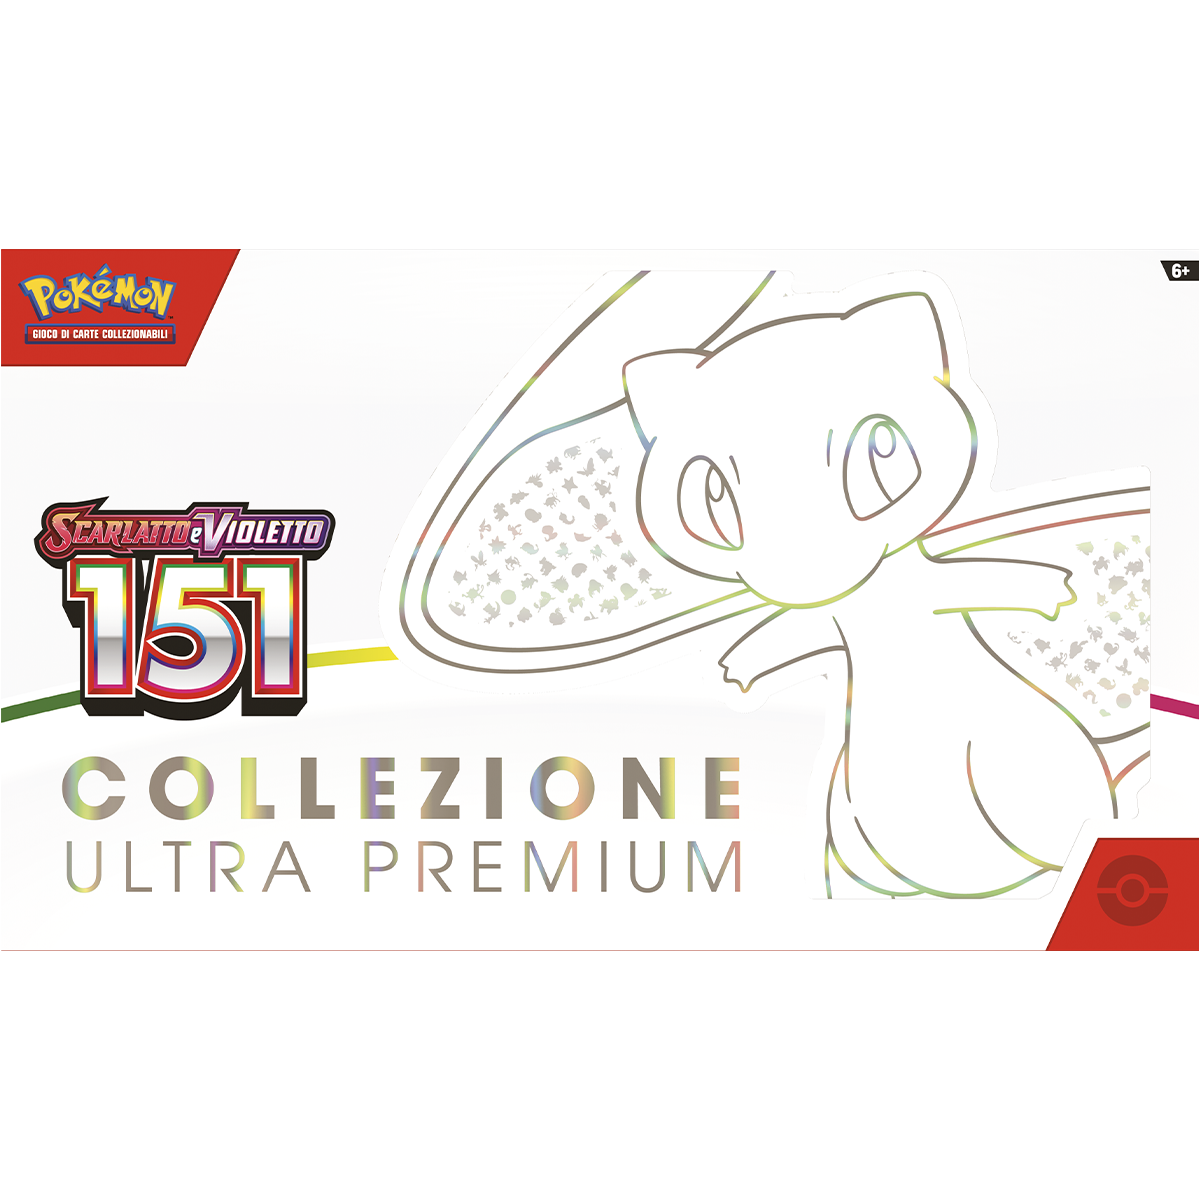 Pokemon scarlatto e violetto 151 collezione ultra premium - POKEMON